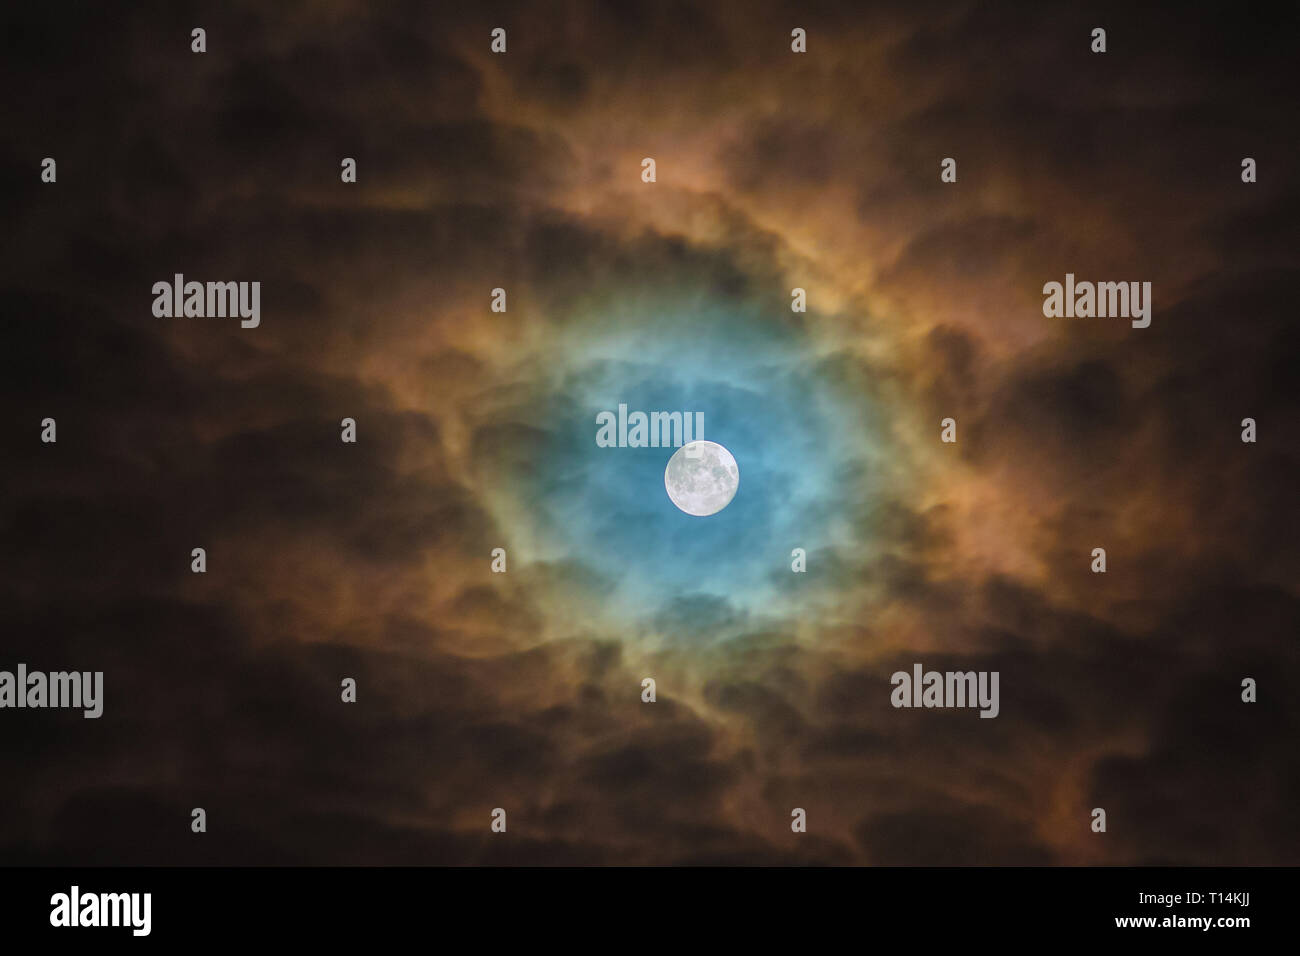 Telescope astrophotographie. Pleine lune portrait détaillé des feux de manière inquiétante à travers les nuages en Ukraine Kriviy Rih, at 3:50 AM Banque D'Images